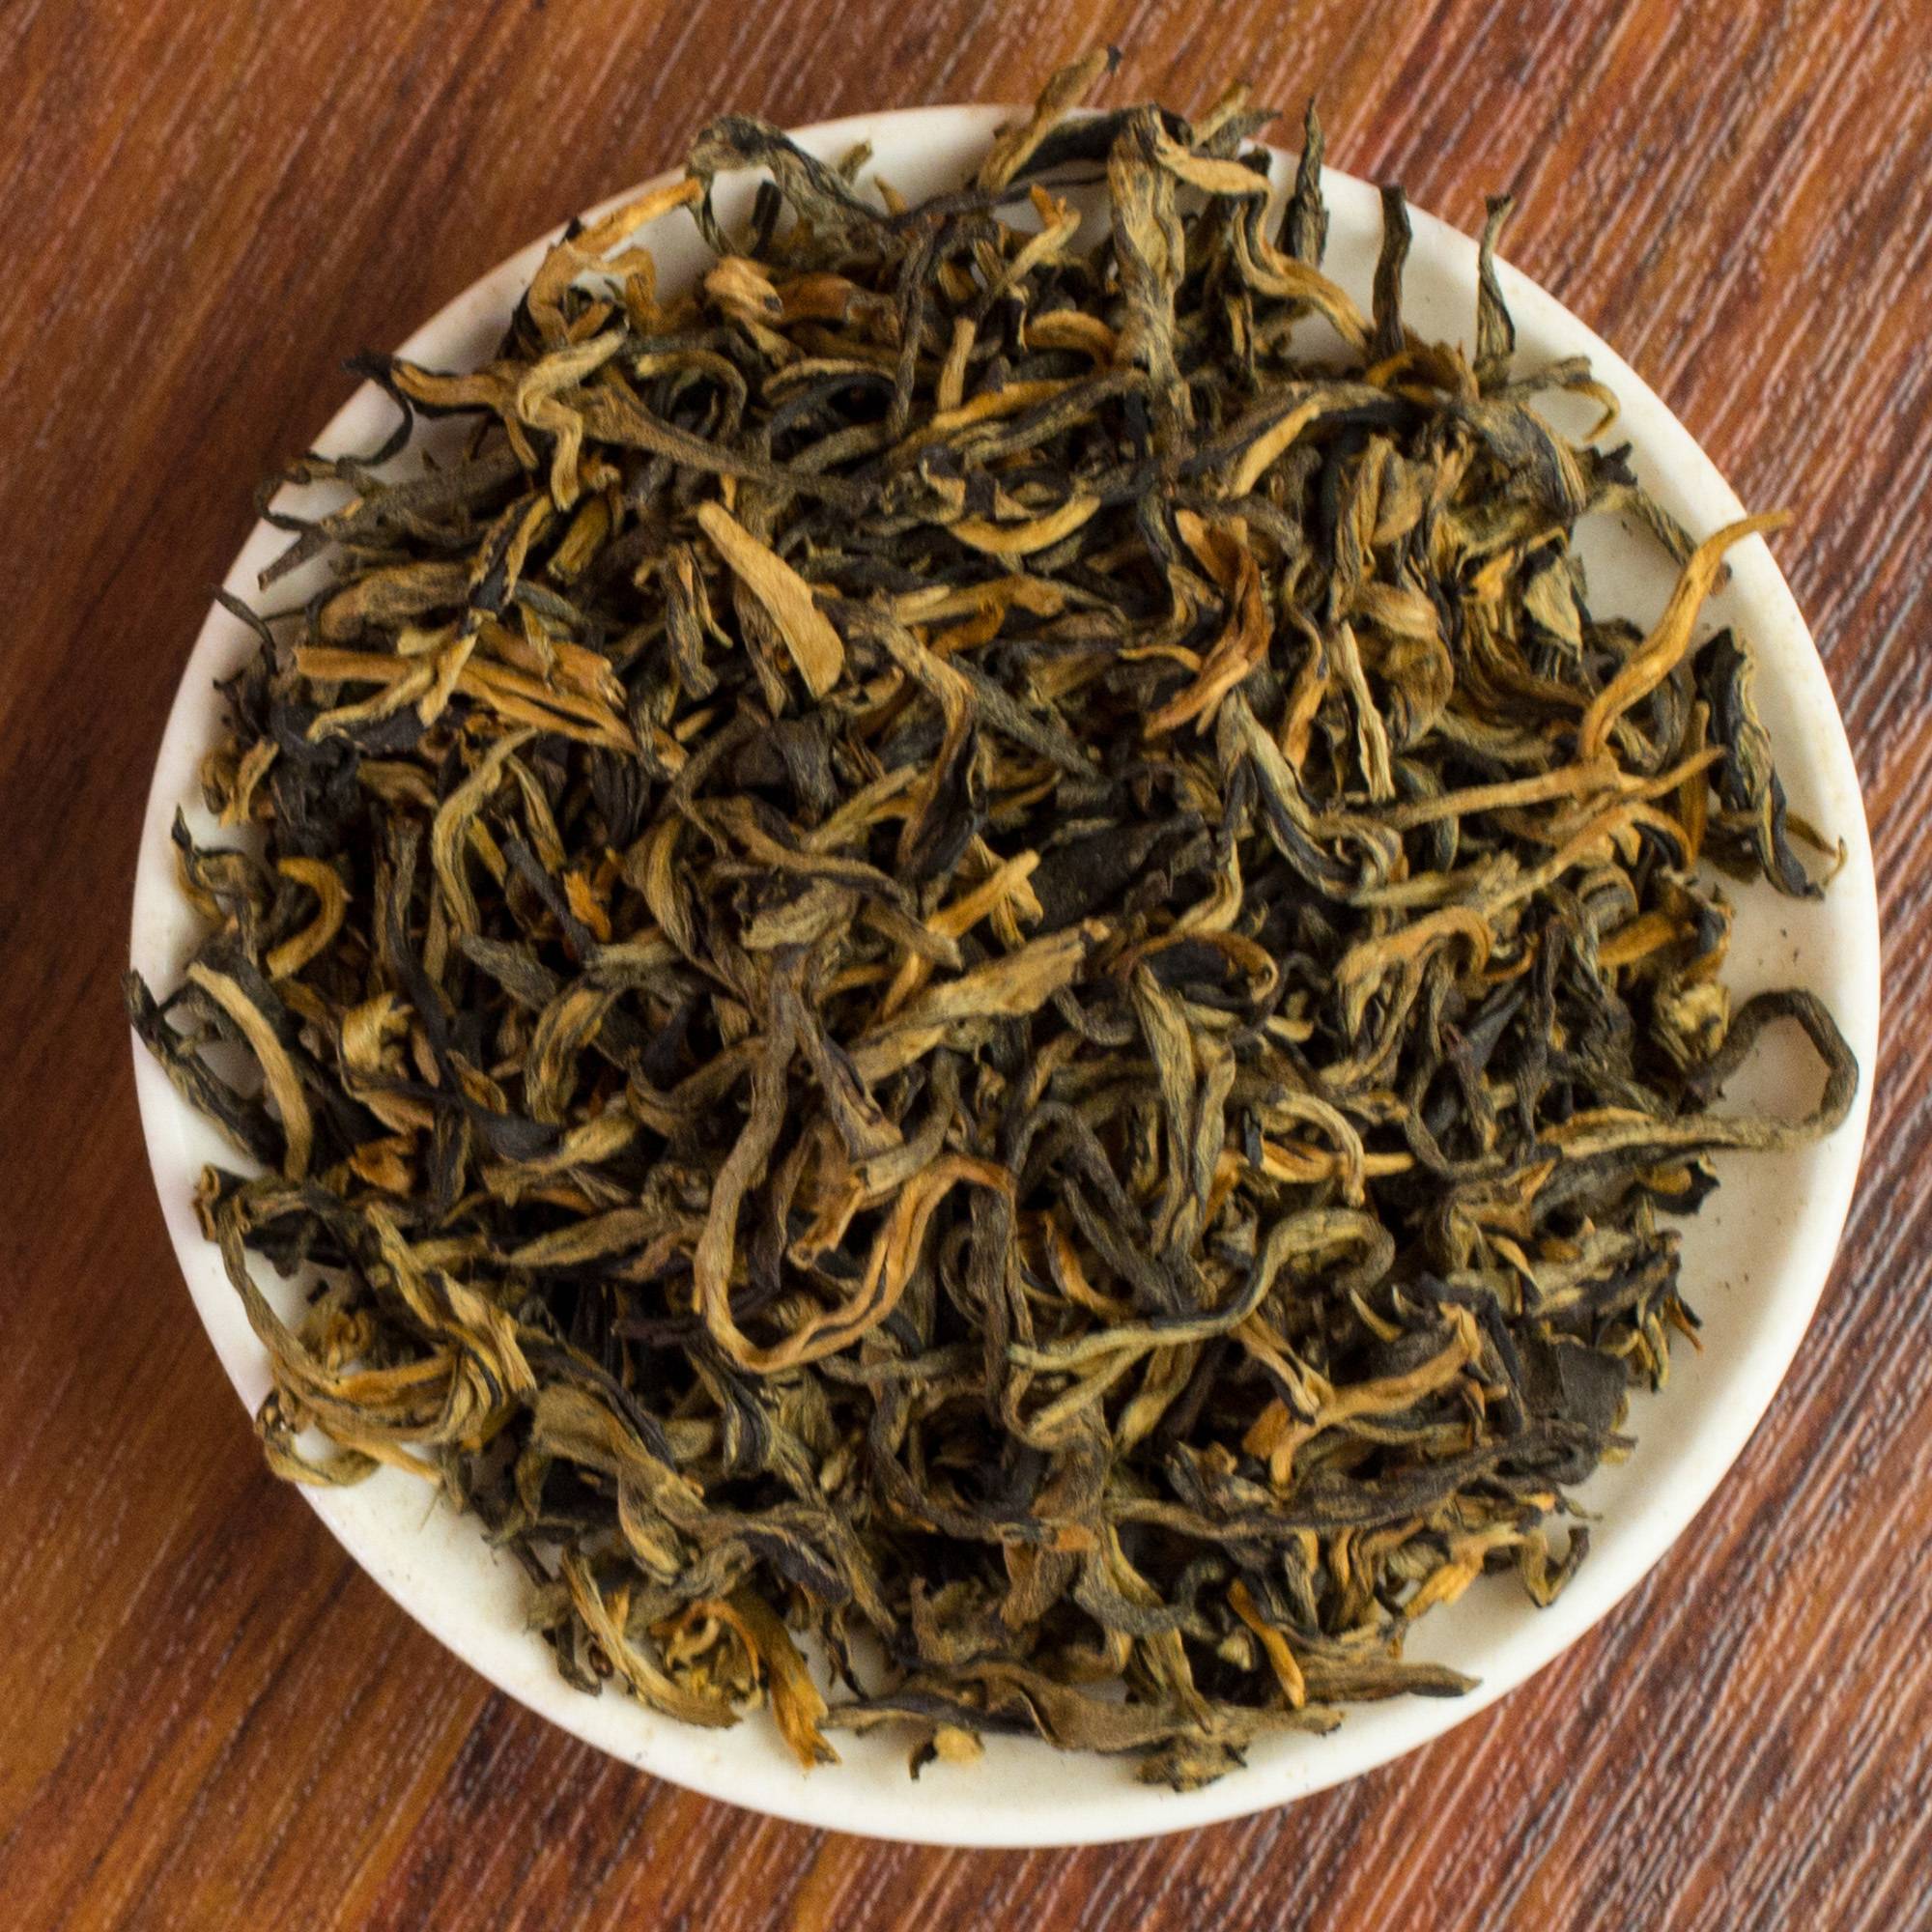 Дянь хун китайский чай: польза, как заваривать